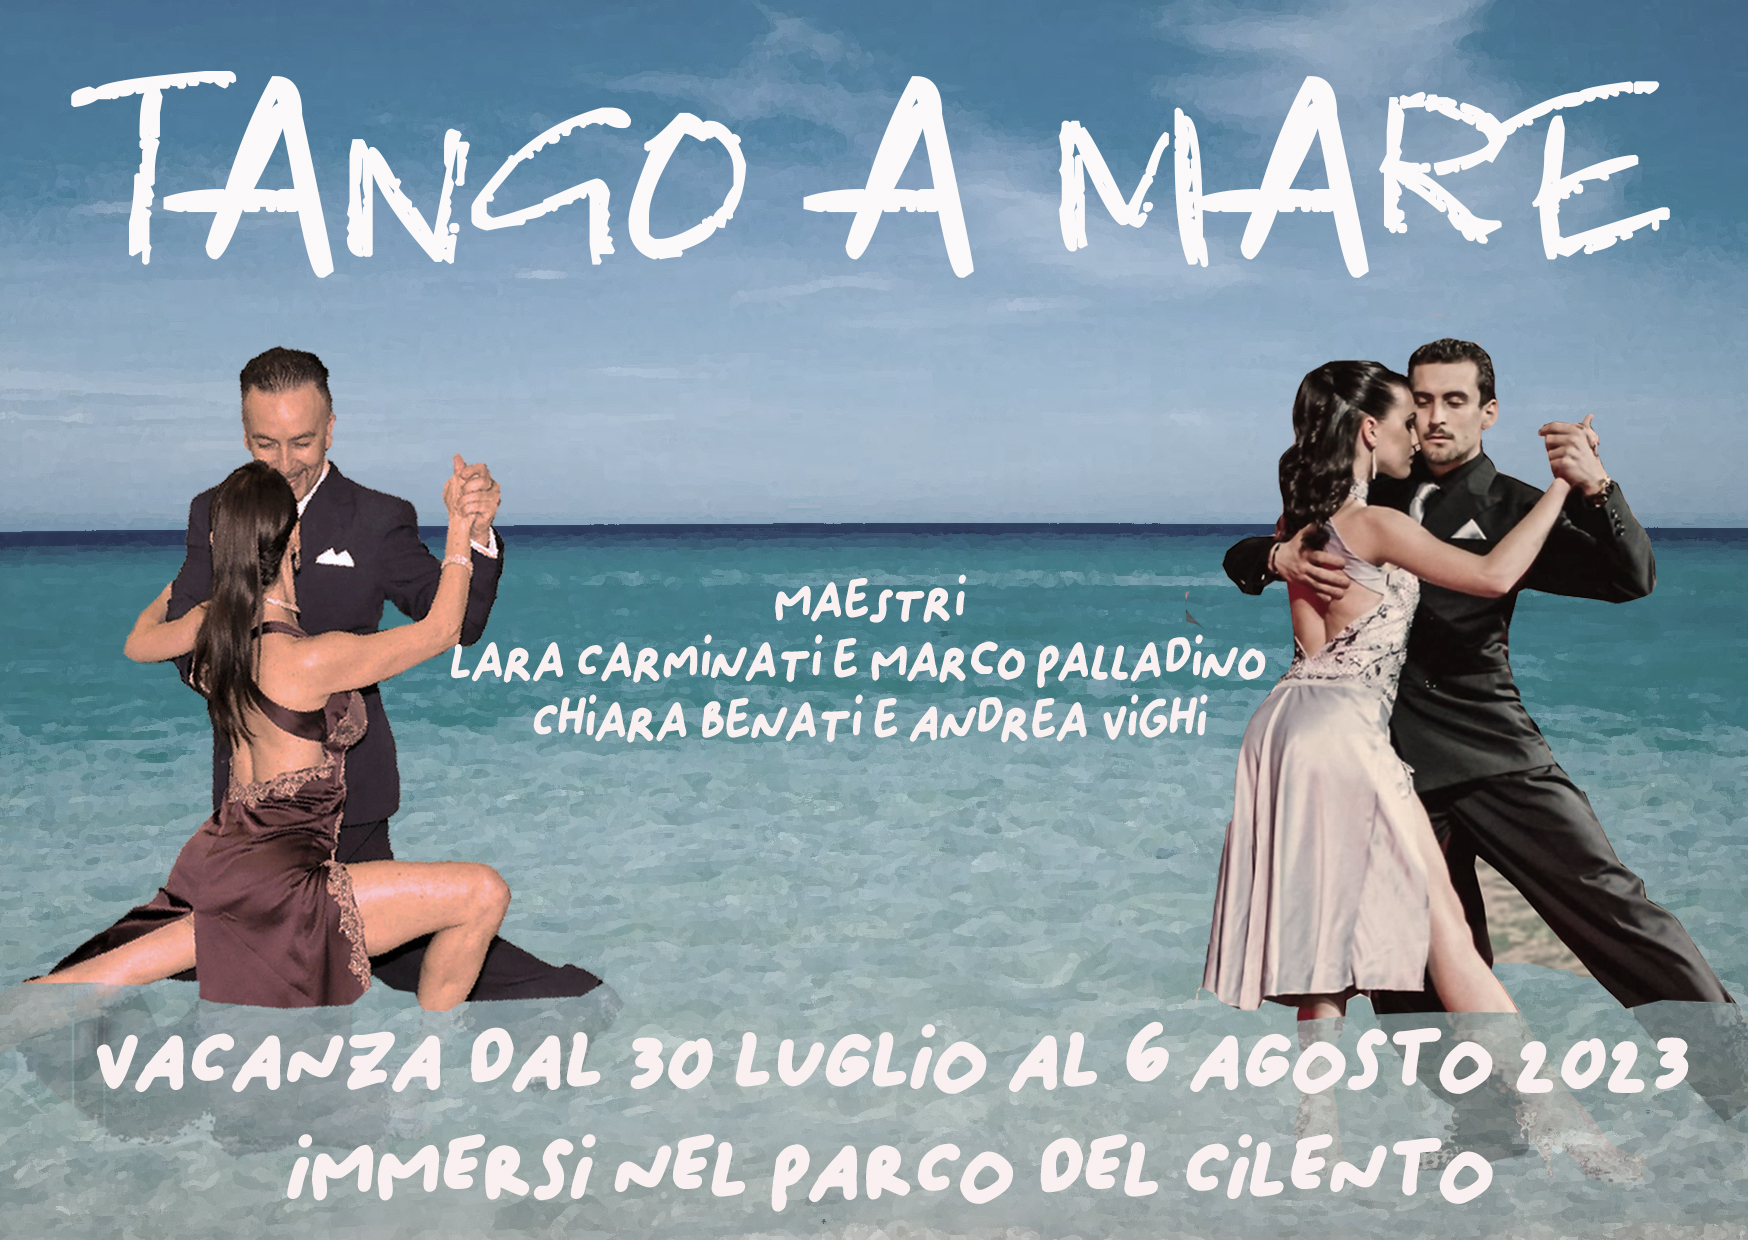 Vacanza Tango…a Mare! Dal 30 luglio al 6 agosto 2023